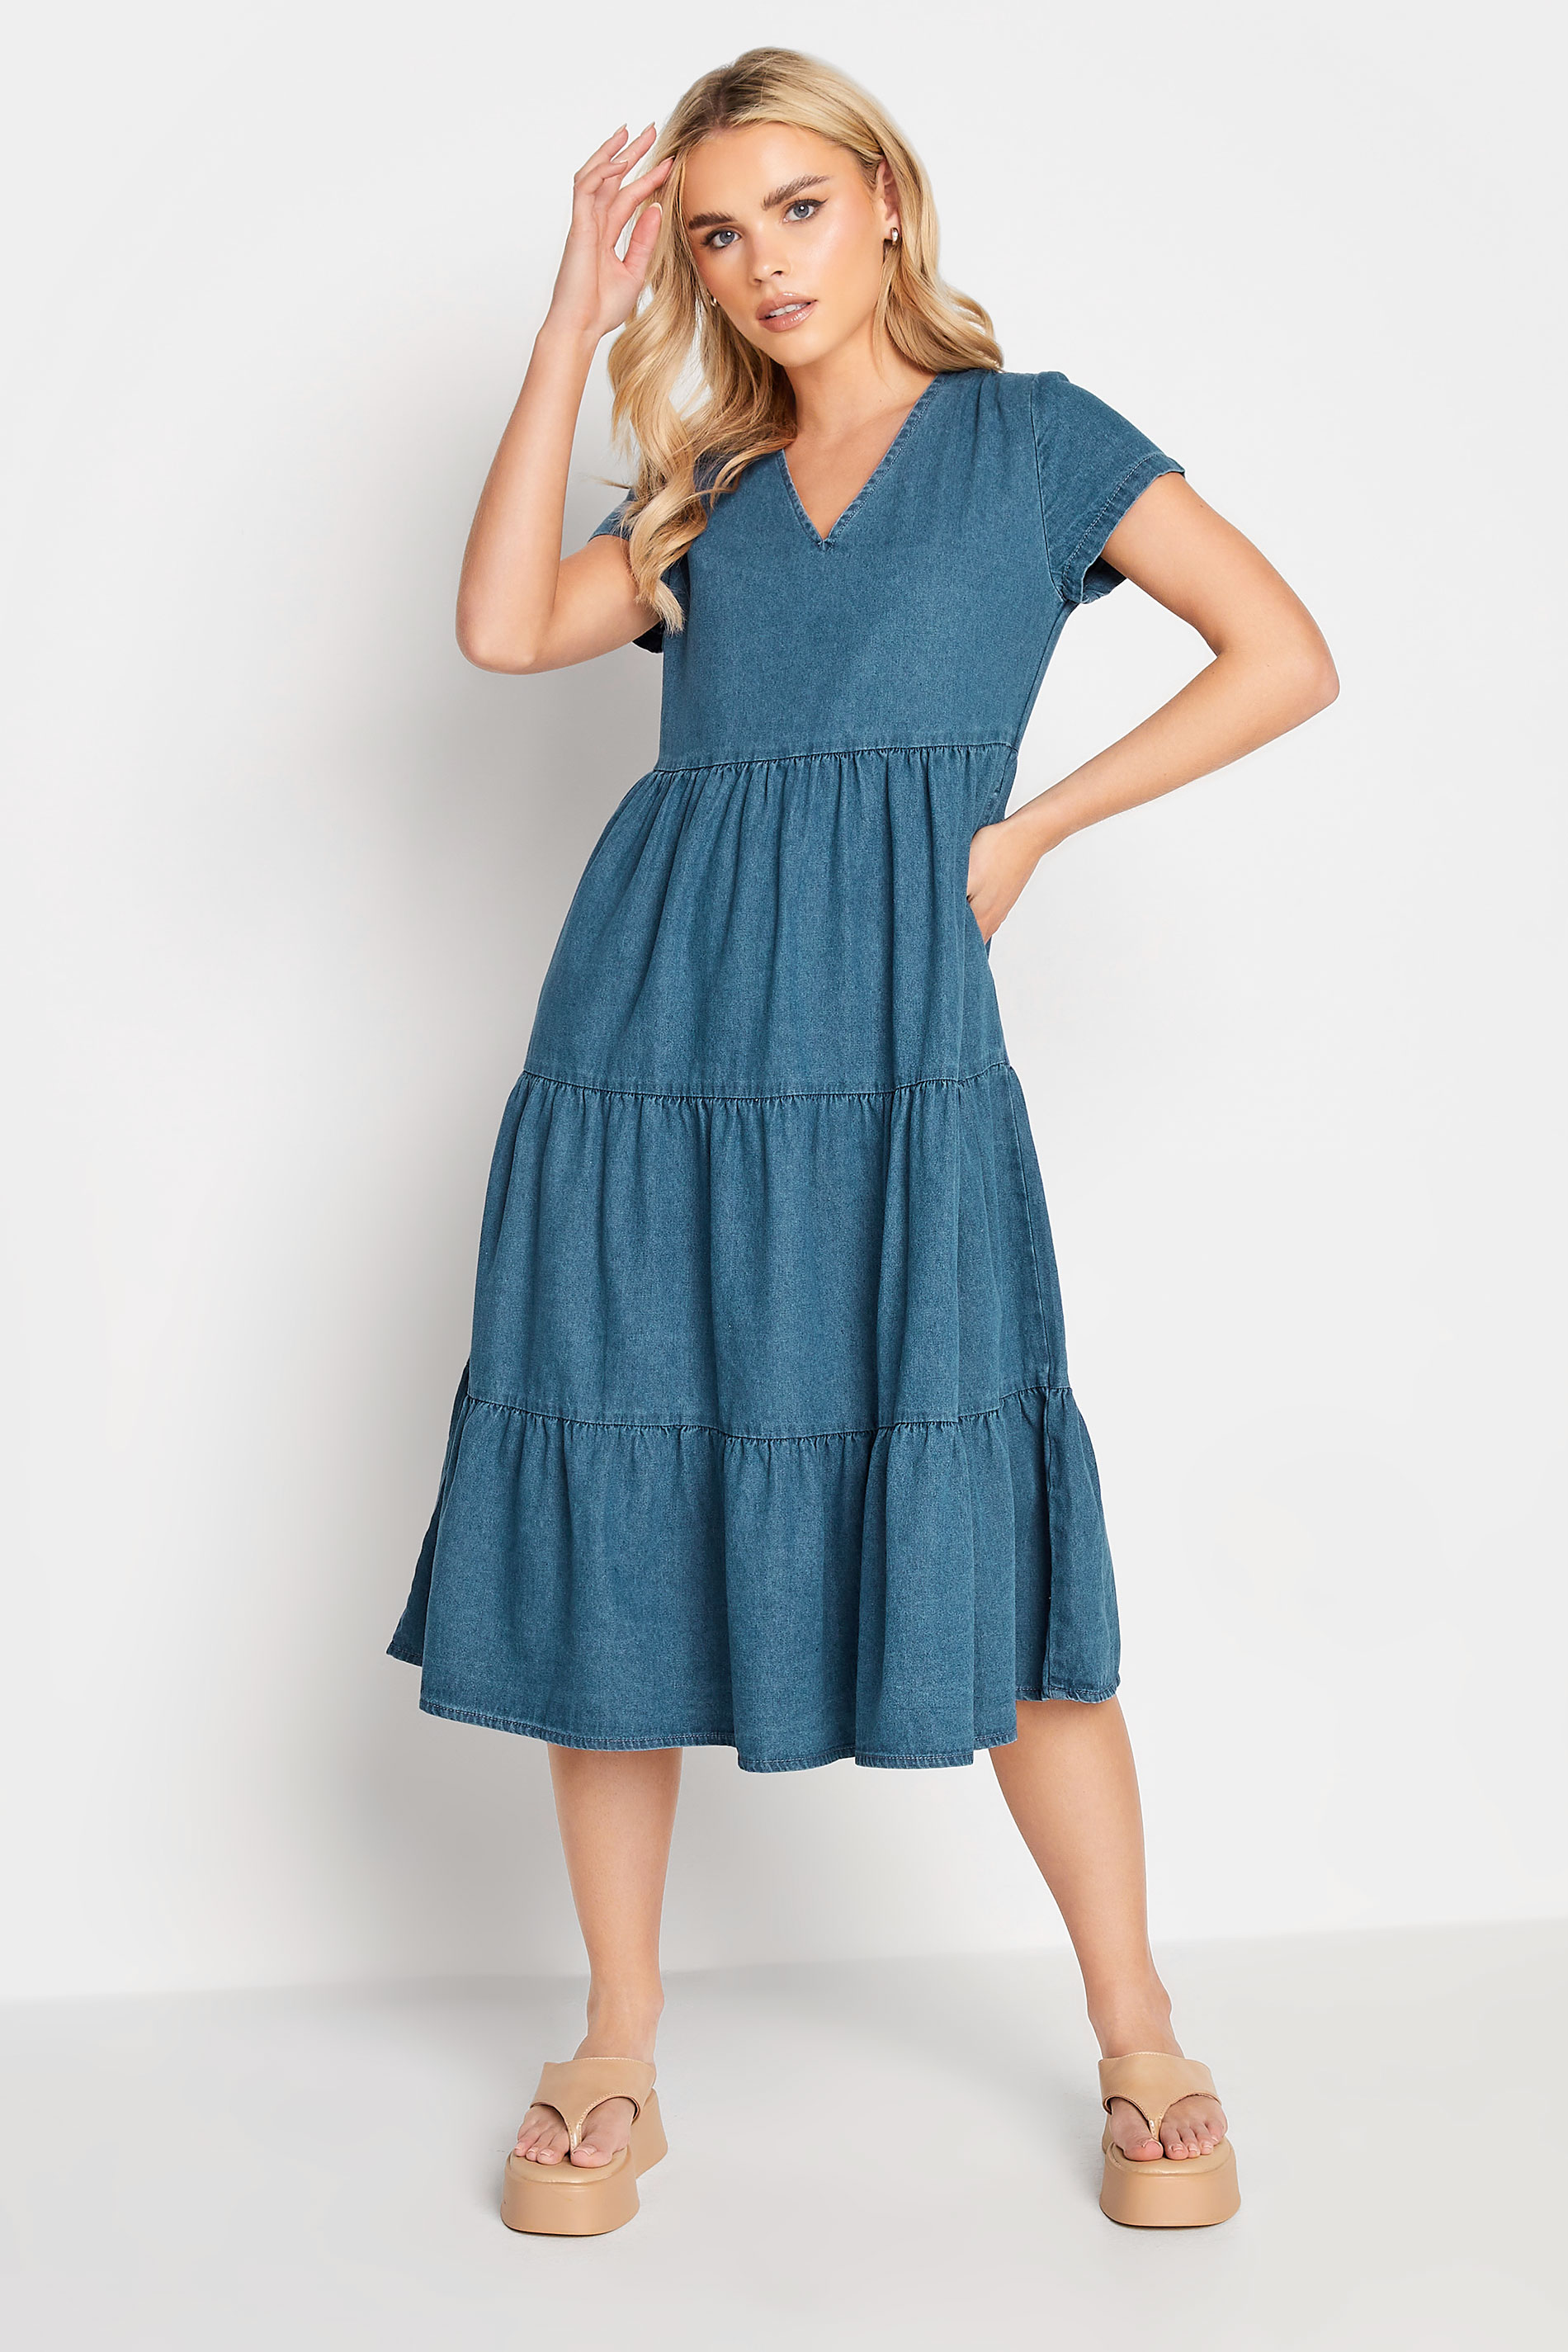 PixieGirl Petite Womens Blue Denim Tiered Midi Dress | PixieGirl 1